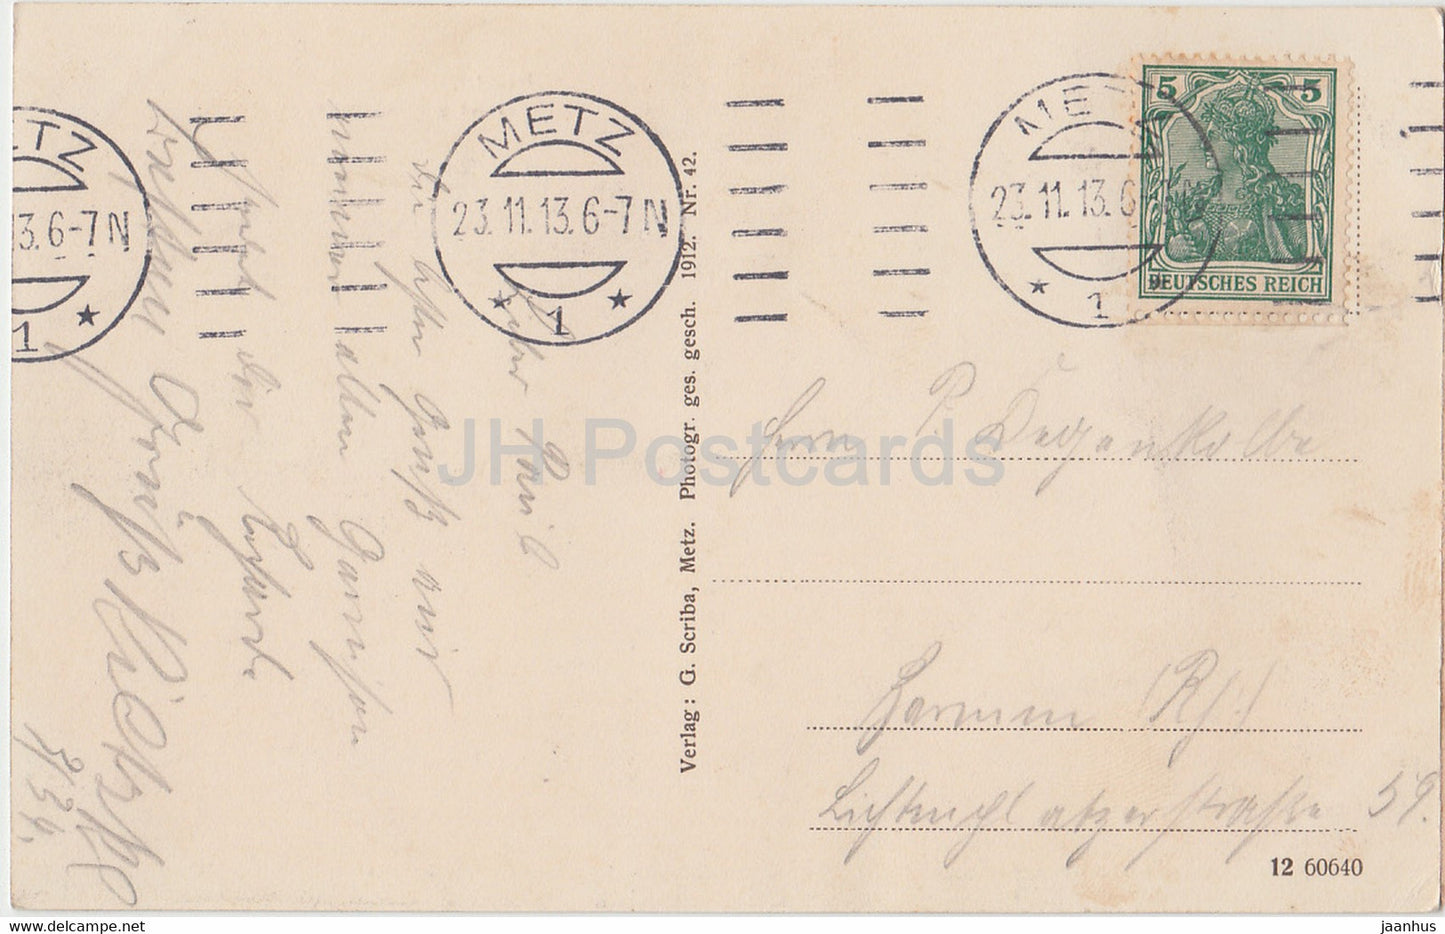 Metz - Neuer Hauptbahnhof - Nouvelle gare centrale - Bahnhof - alte Postkarte - 1913 - Frankreich - gebraucht